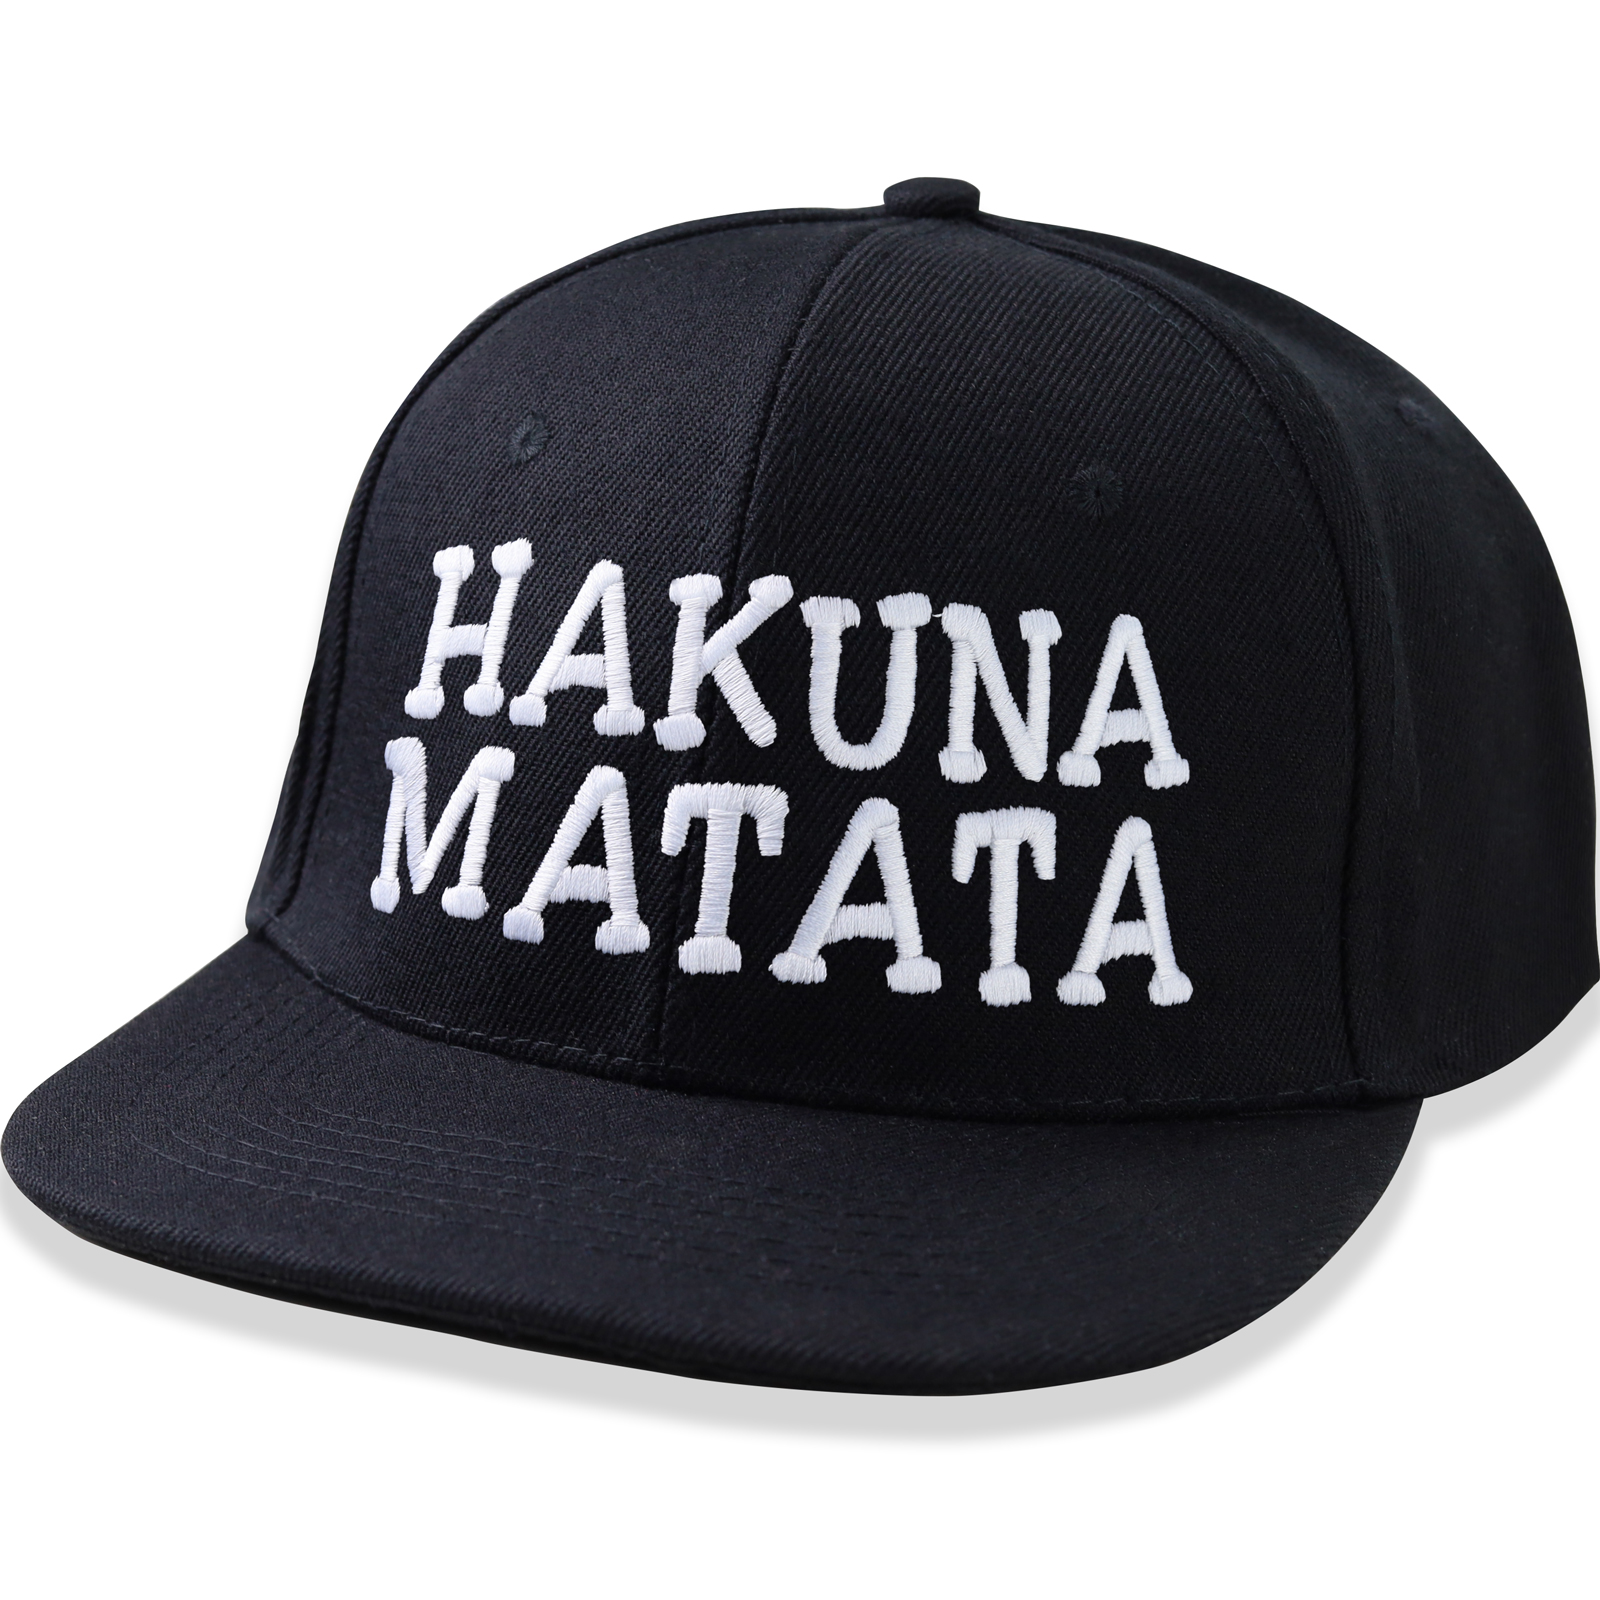 Hakuna Matata - Kappe